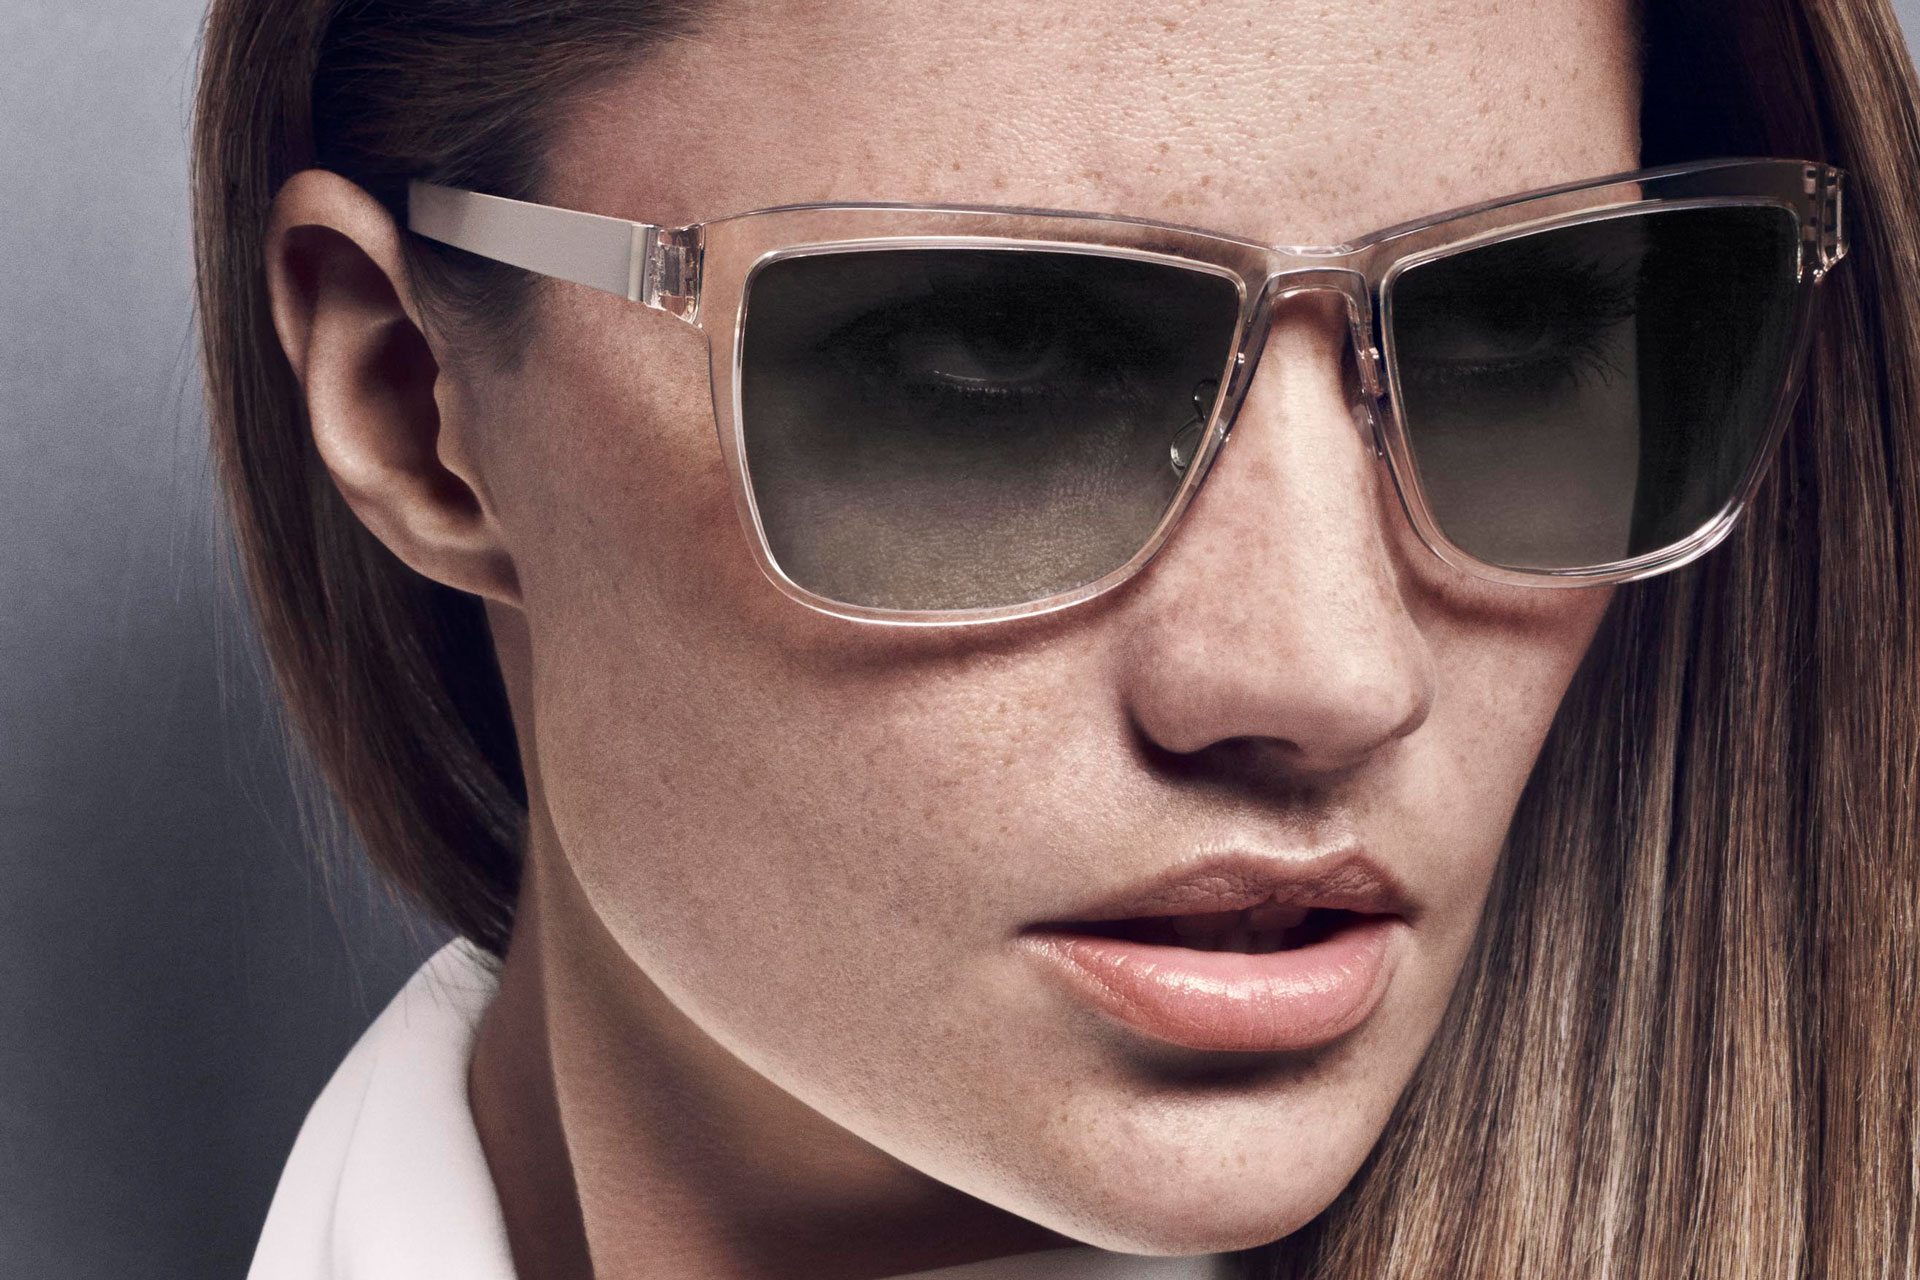 Enkelhed og elegance: Brillestel LINDBERG og solbrilleglas fra ZEISS – et